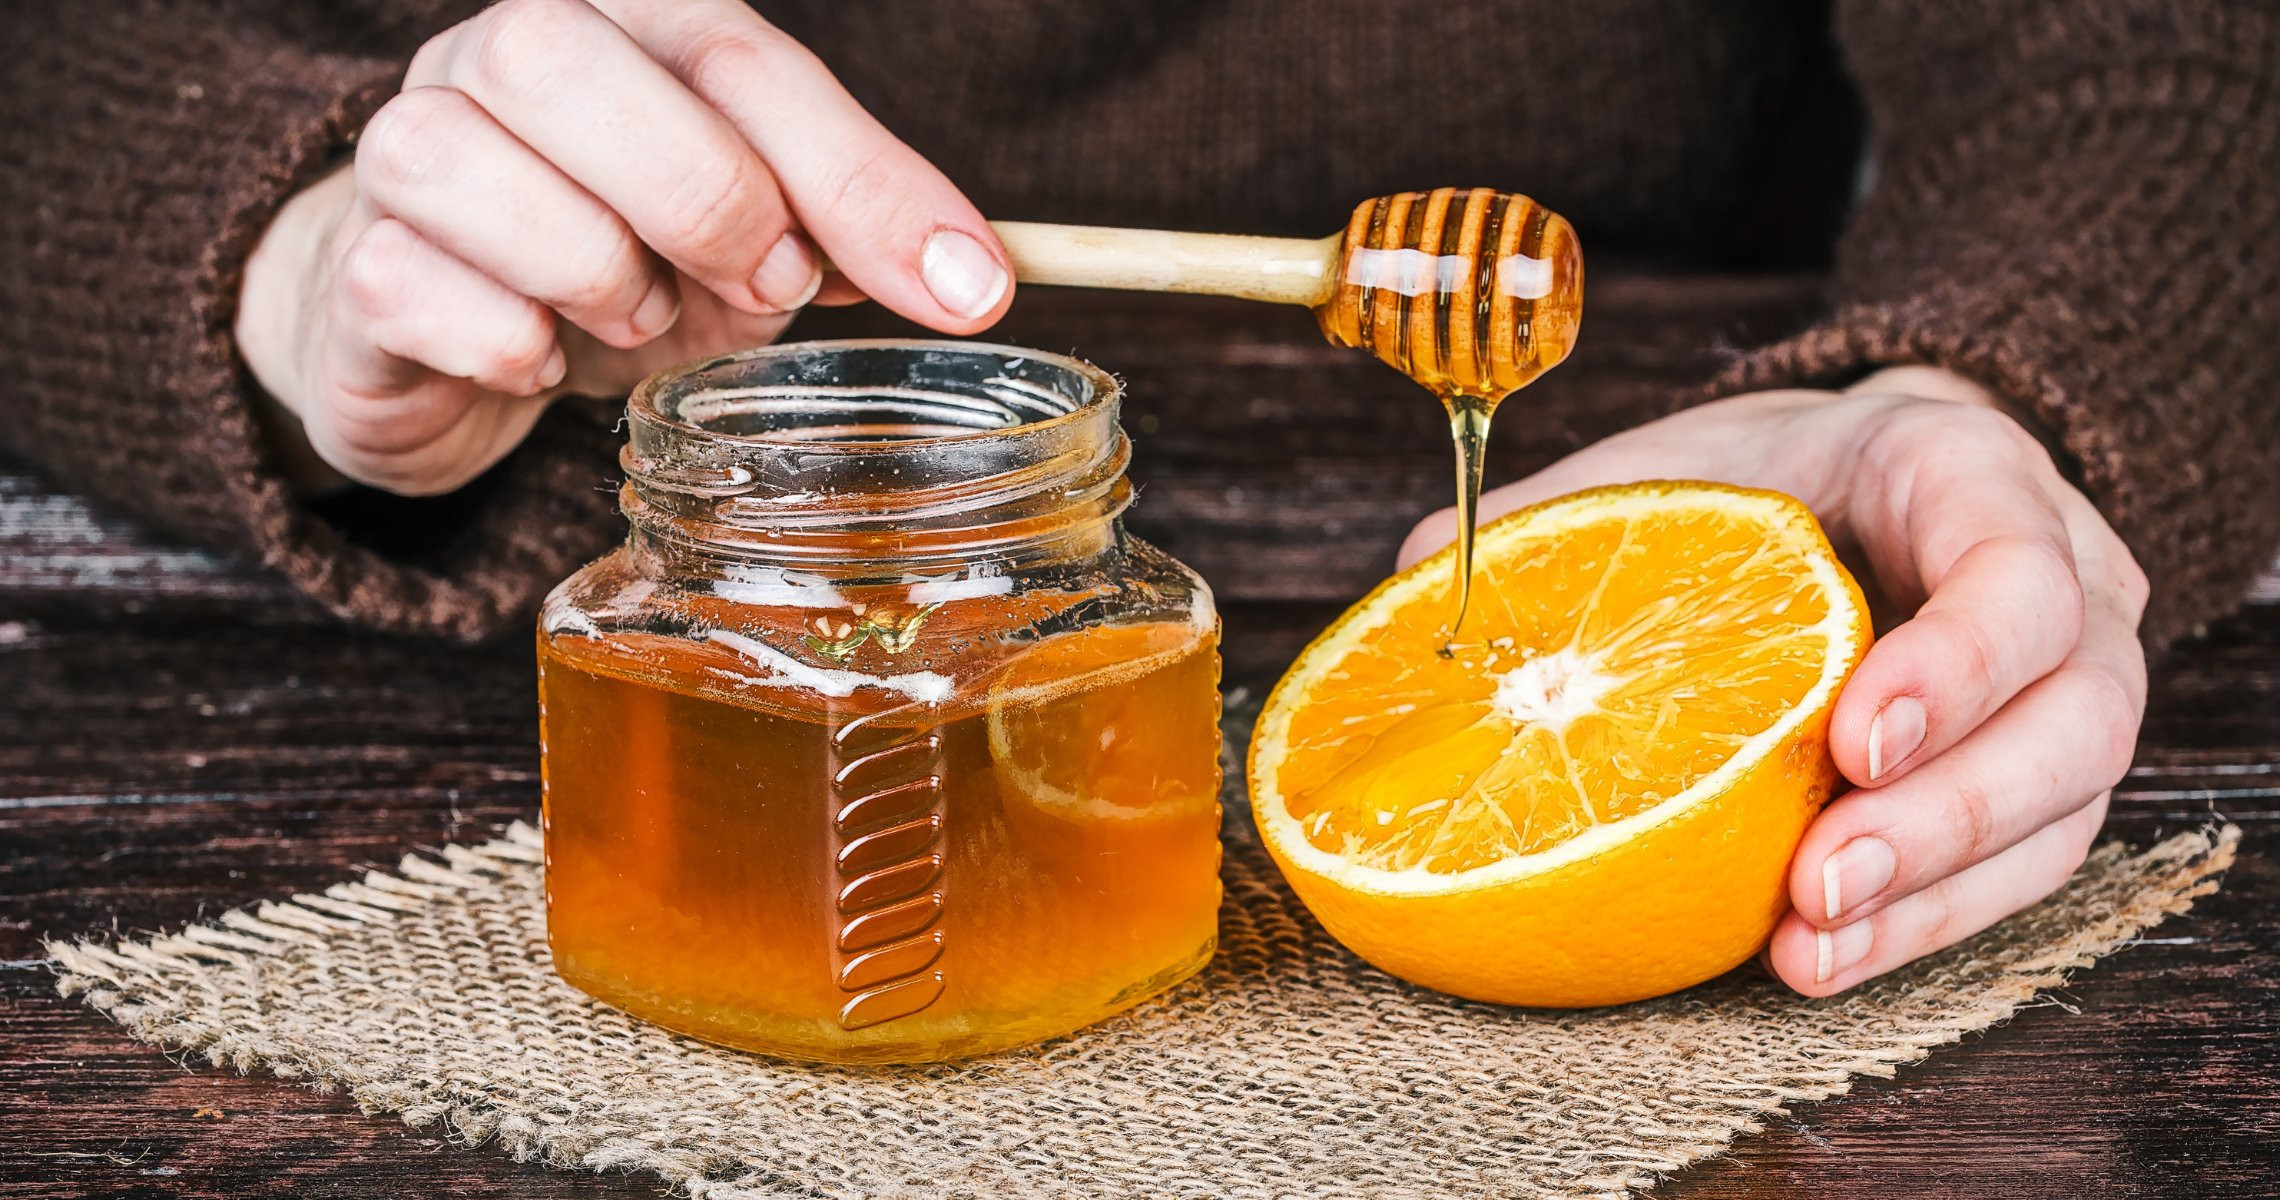 Trong nước cam mật ong bao nhiêu calo? Uống vào giảm cân không?